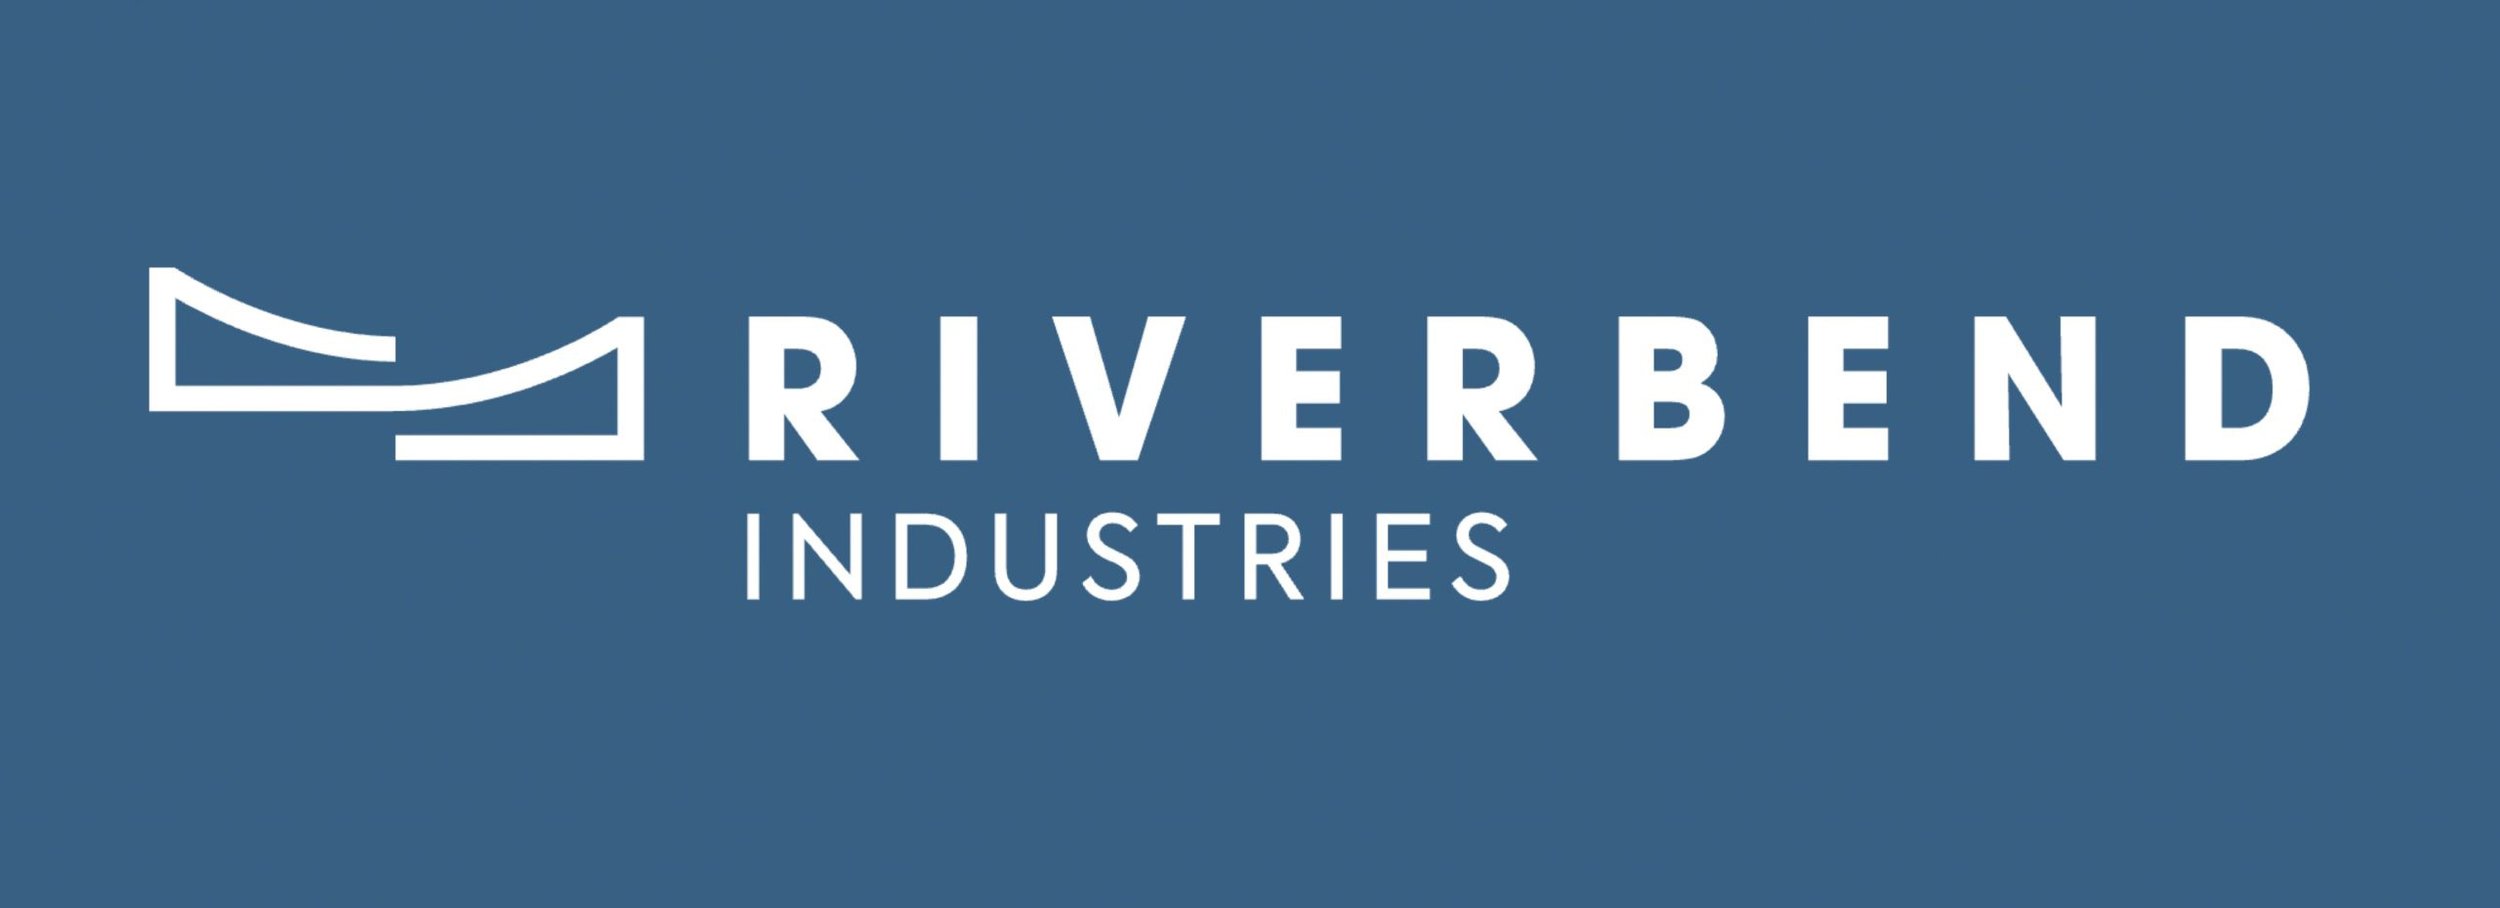 RIVERBEND-INDUSTRIES-Logo-scaled.jpg